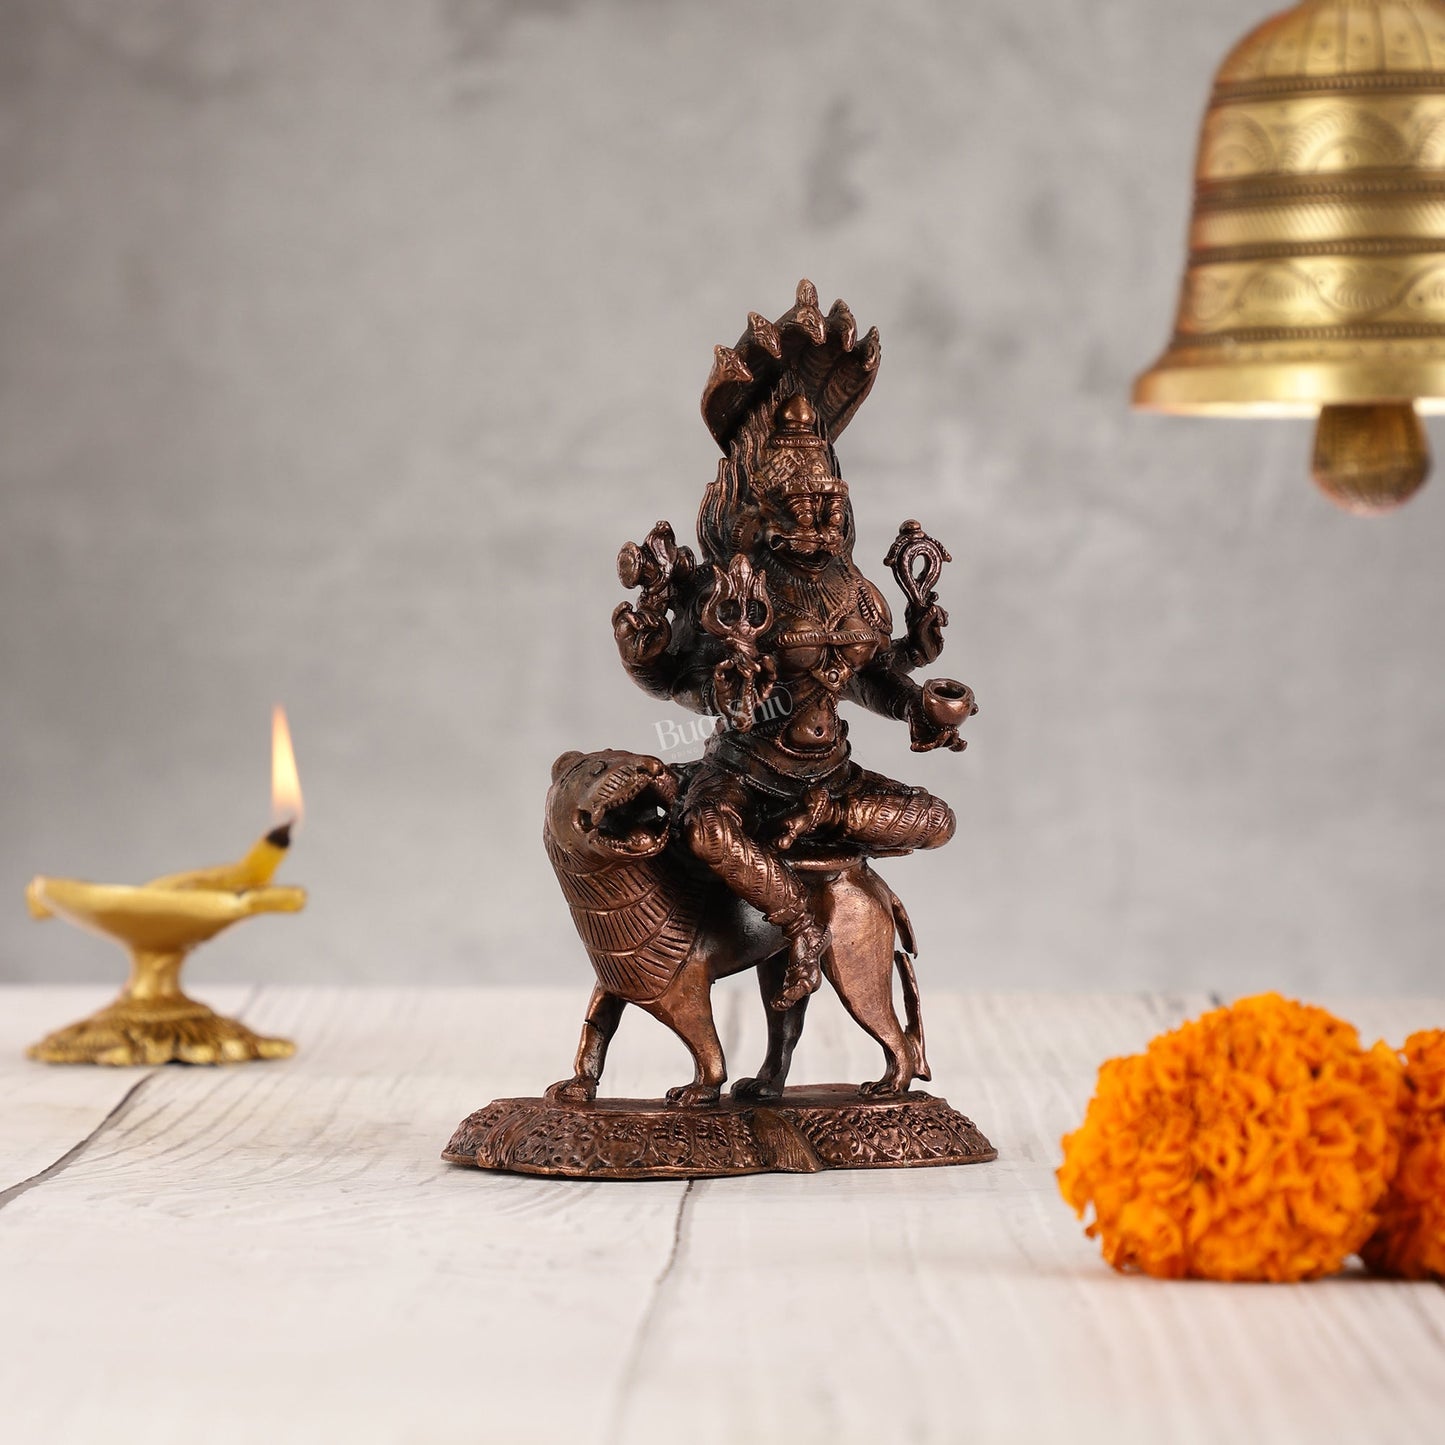 Pure Copper Pratyangira Devi Idol - 5.5 Inch - Budhshiv.com